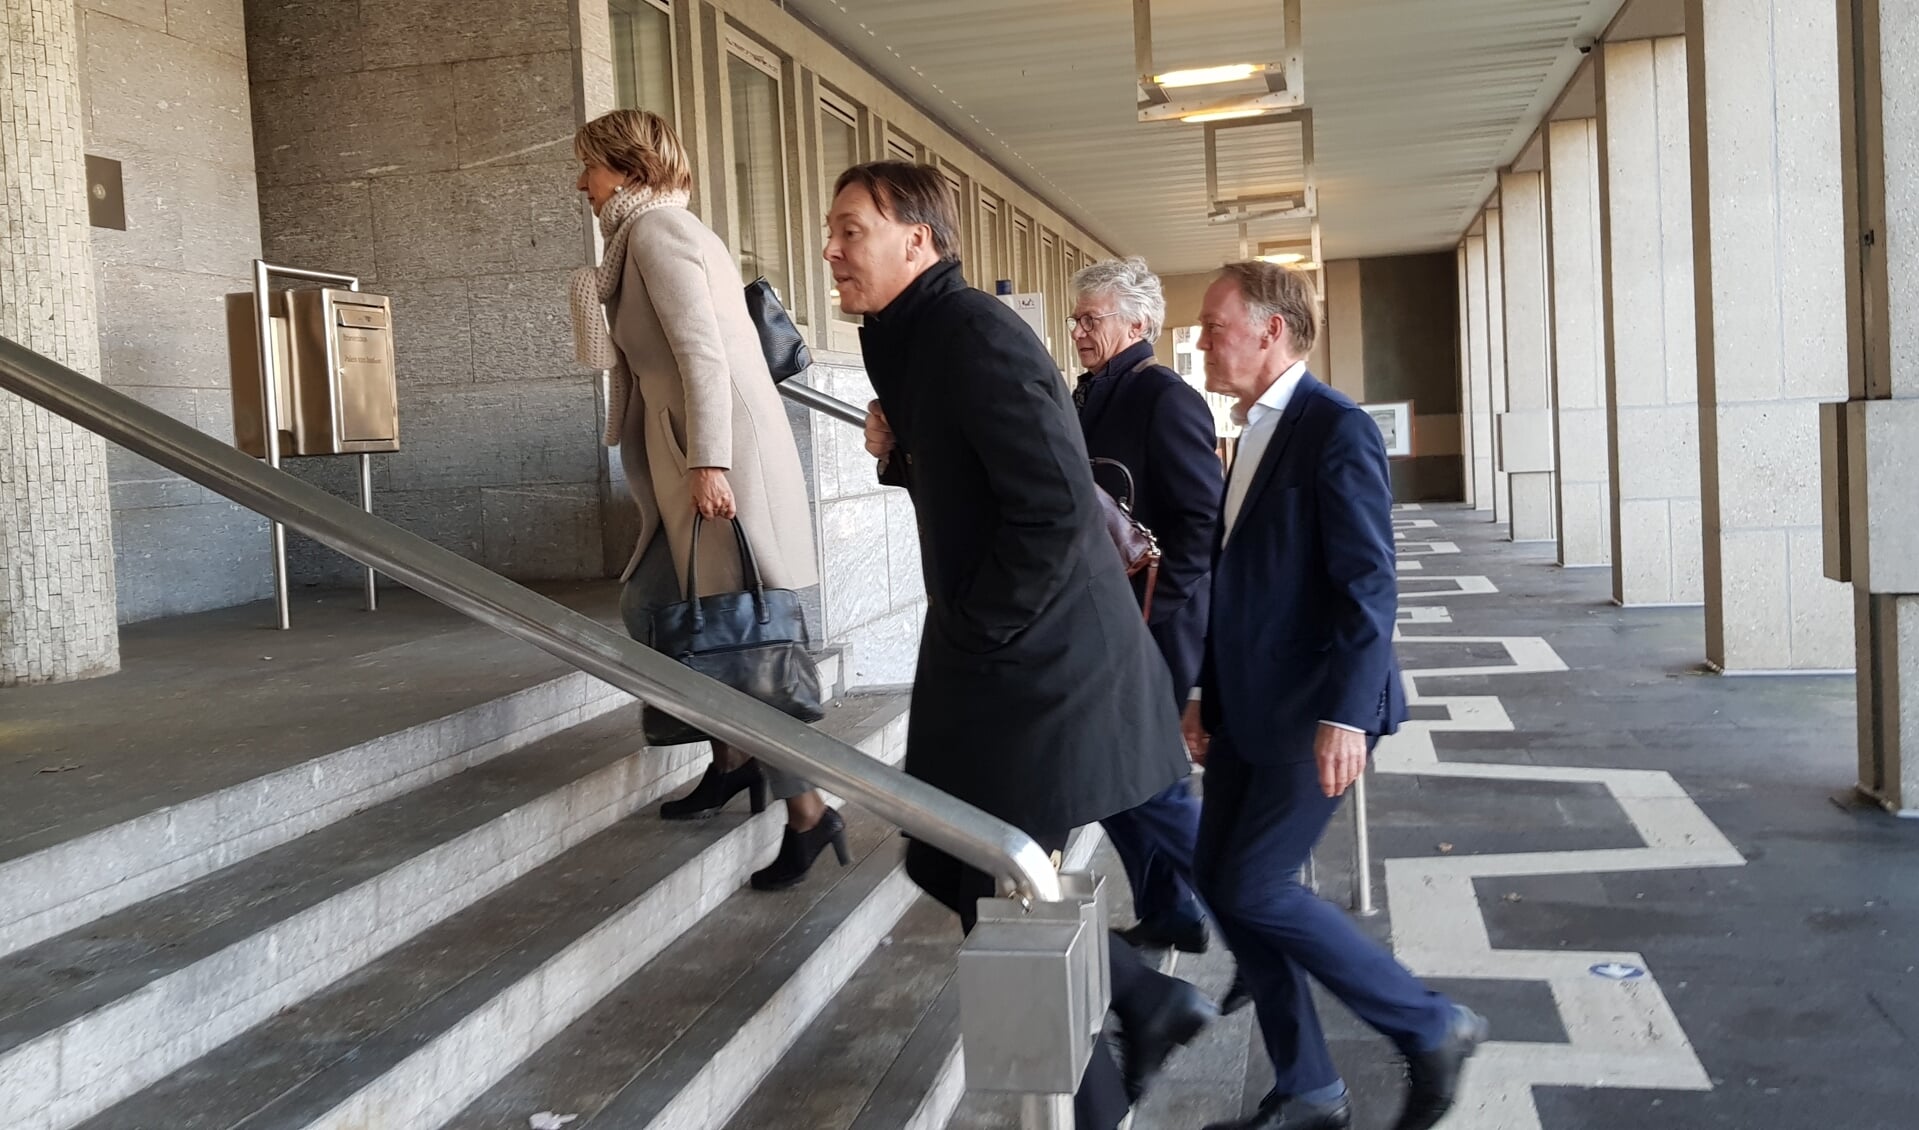 Commissaris van de Koning John Berends met onder anderen advocaat Tom Barkhuysen en zijn woordvoerder bij de rechtbank.